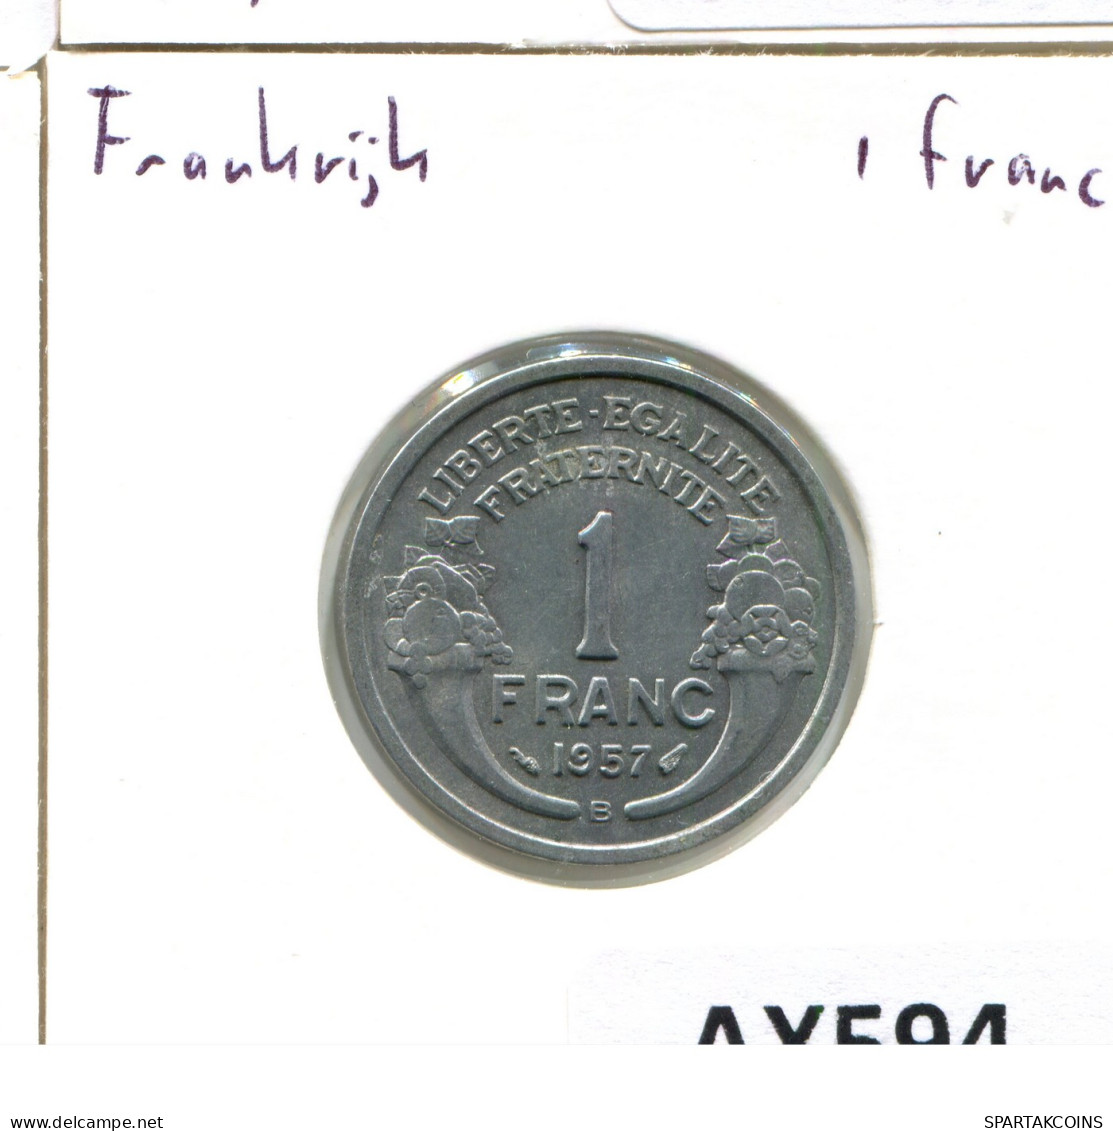 1 FRANC 1957 B FRANCIA FRANCE Moneda #AX594.E - 1 Franc